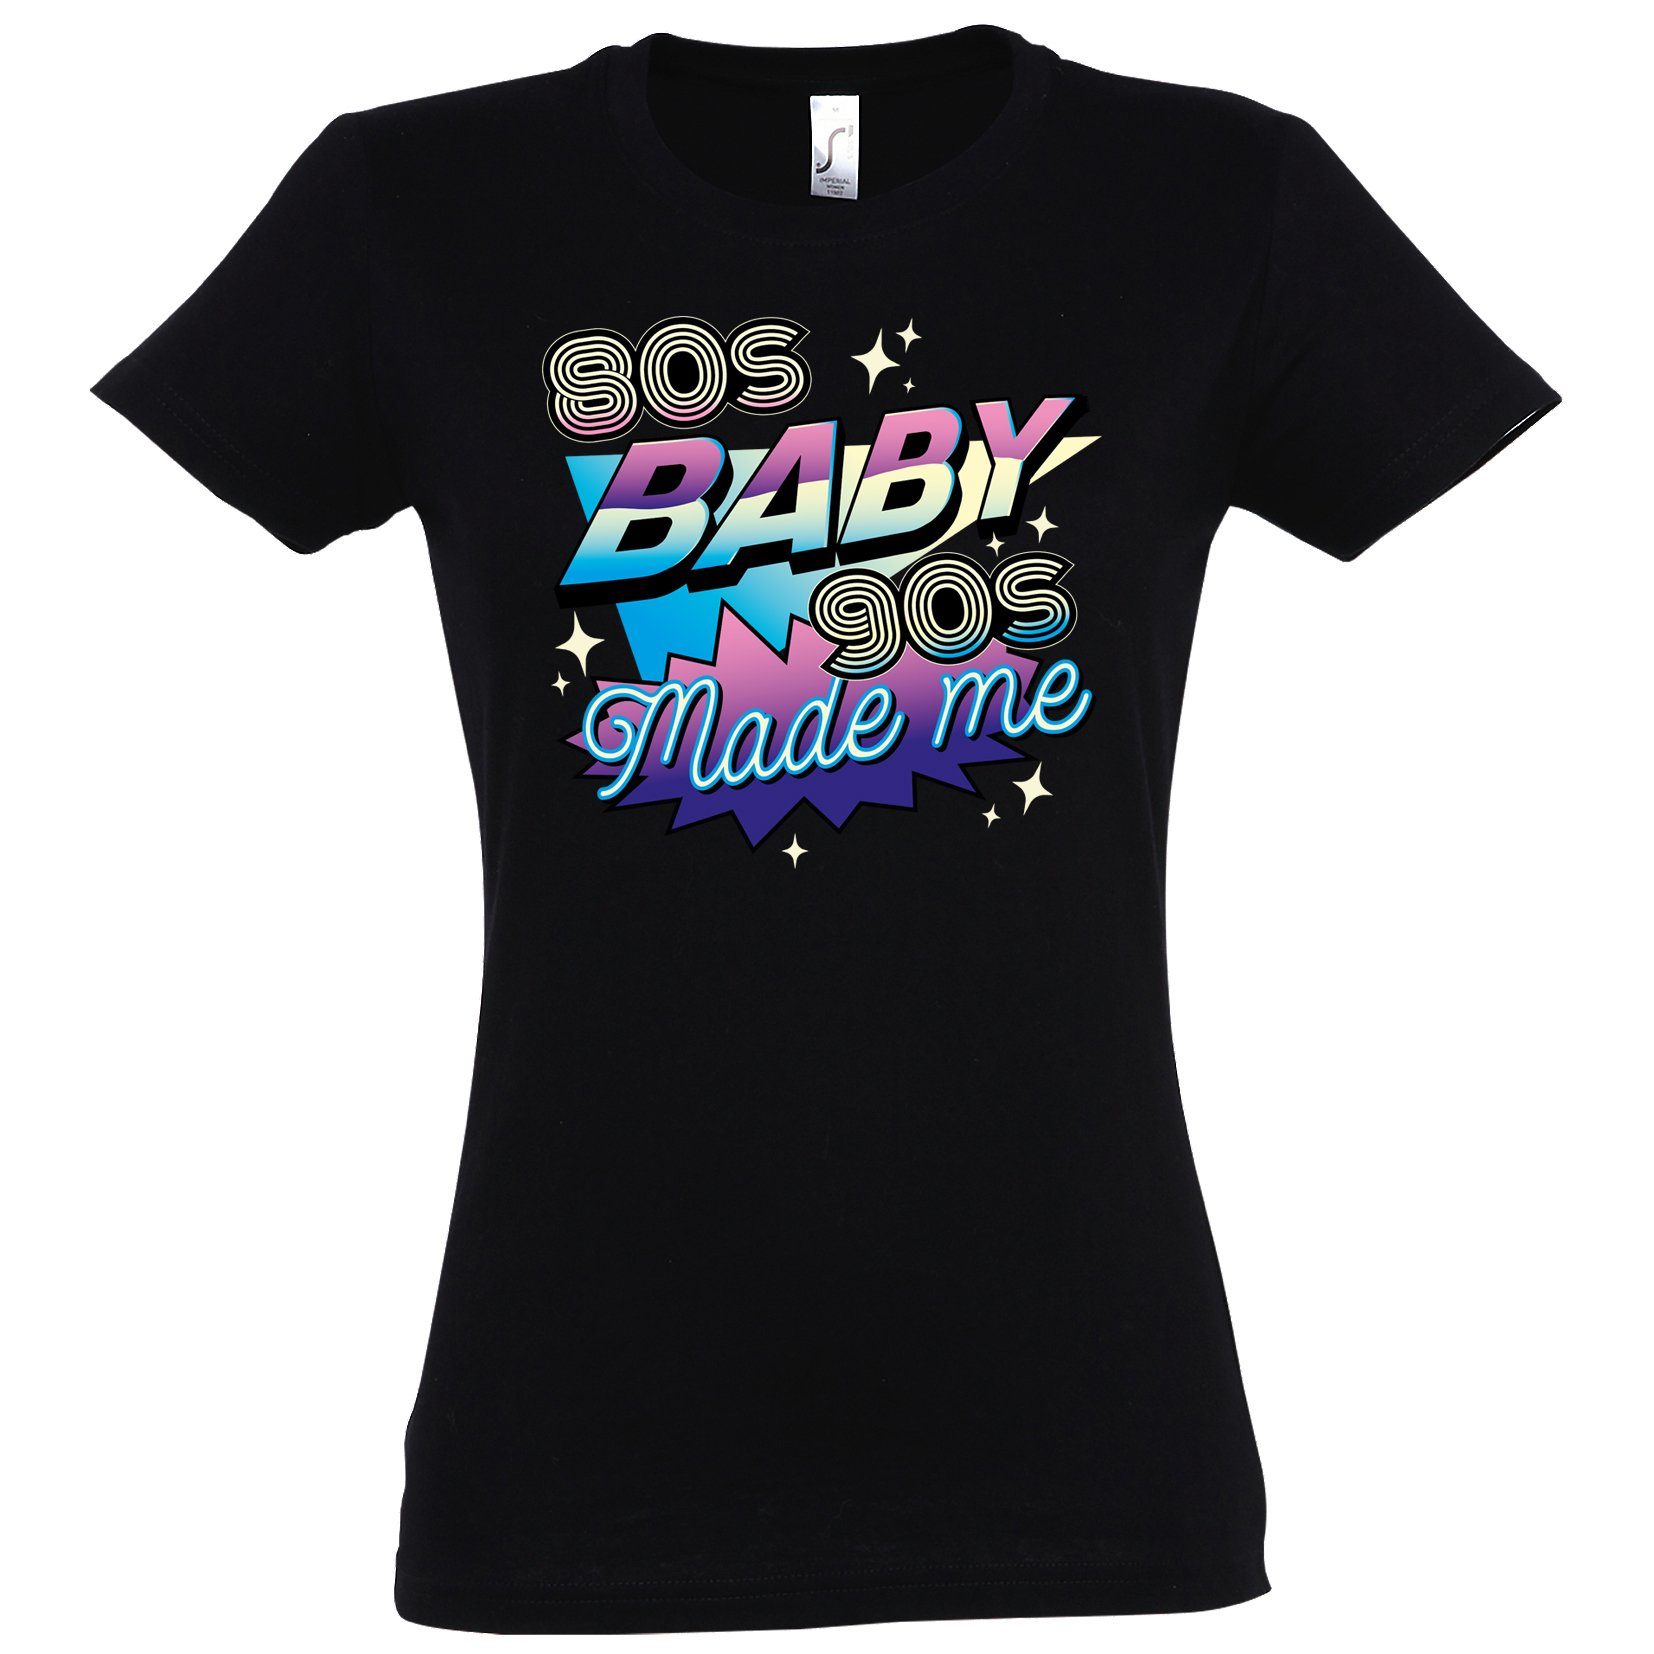 Youth Designz T-Shirt 80'S BABY 90'S Made me Damen Shirt mit Trendigem Retro Look Schwarz